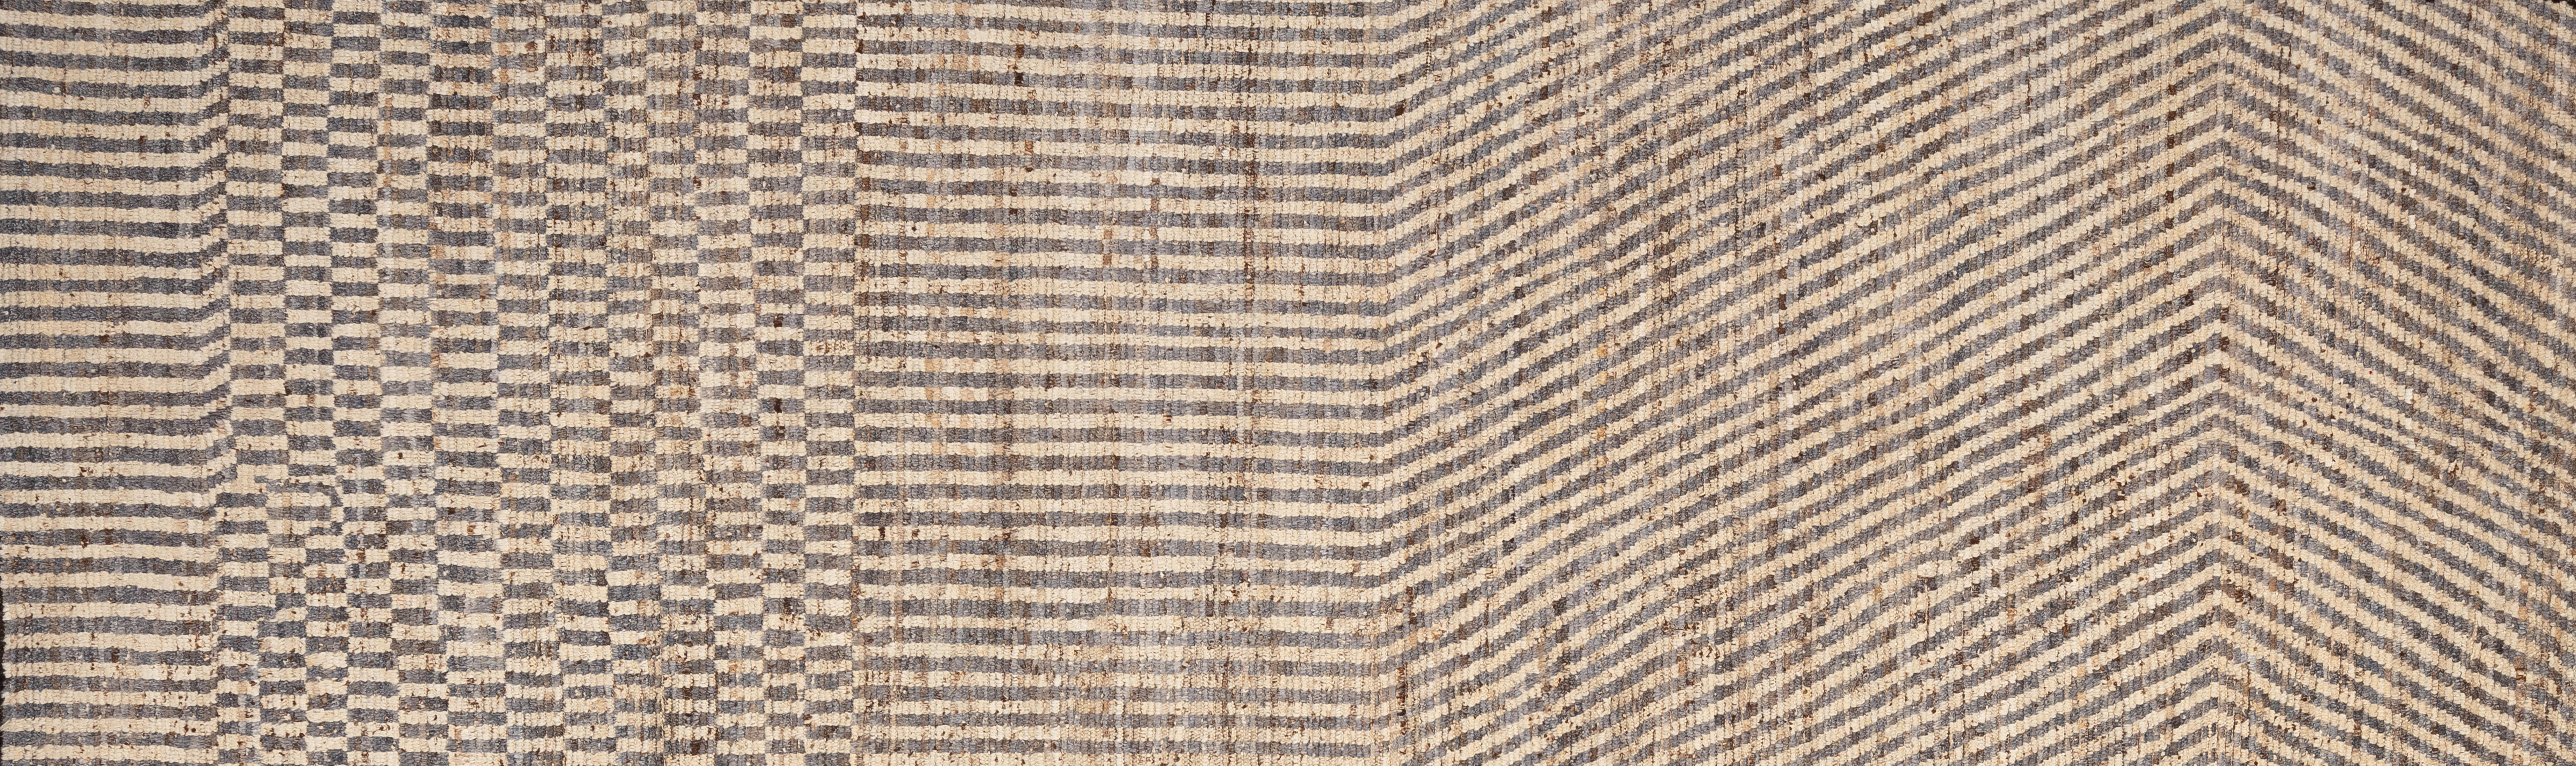 Tissé à la main avec 100% de laine filée à la main dans les montagnes d'Afghanistan, ce magnifique tapis marocain teint naturellement est vraiment unique en son genre. Les tapis marocains ont tendance à être simples et sont le complément parfait de